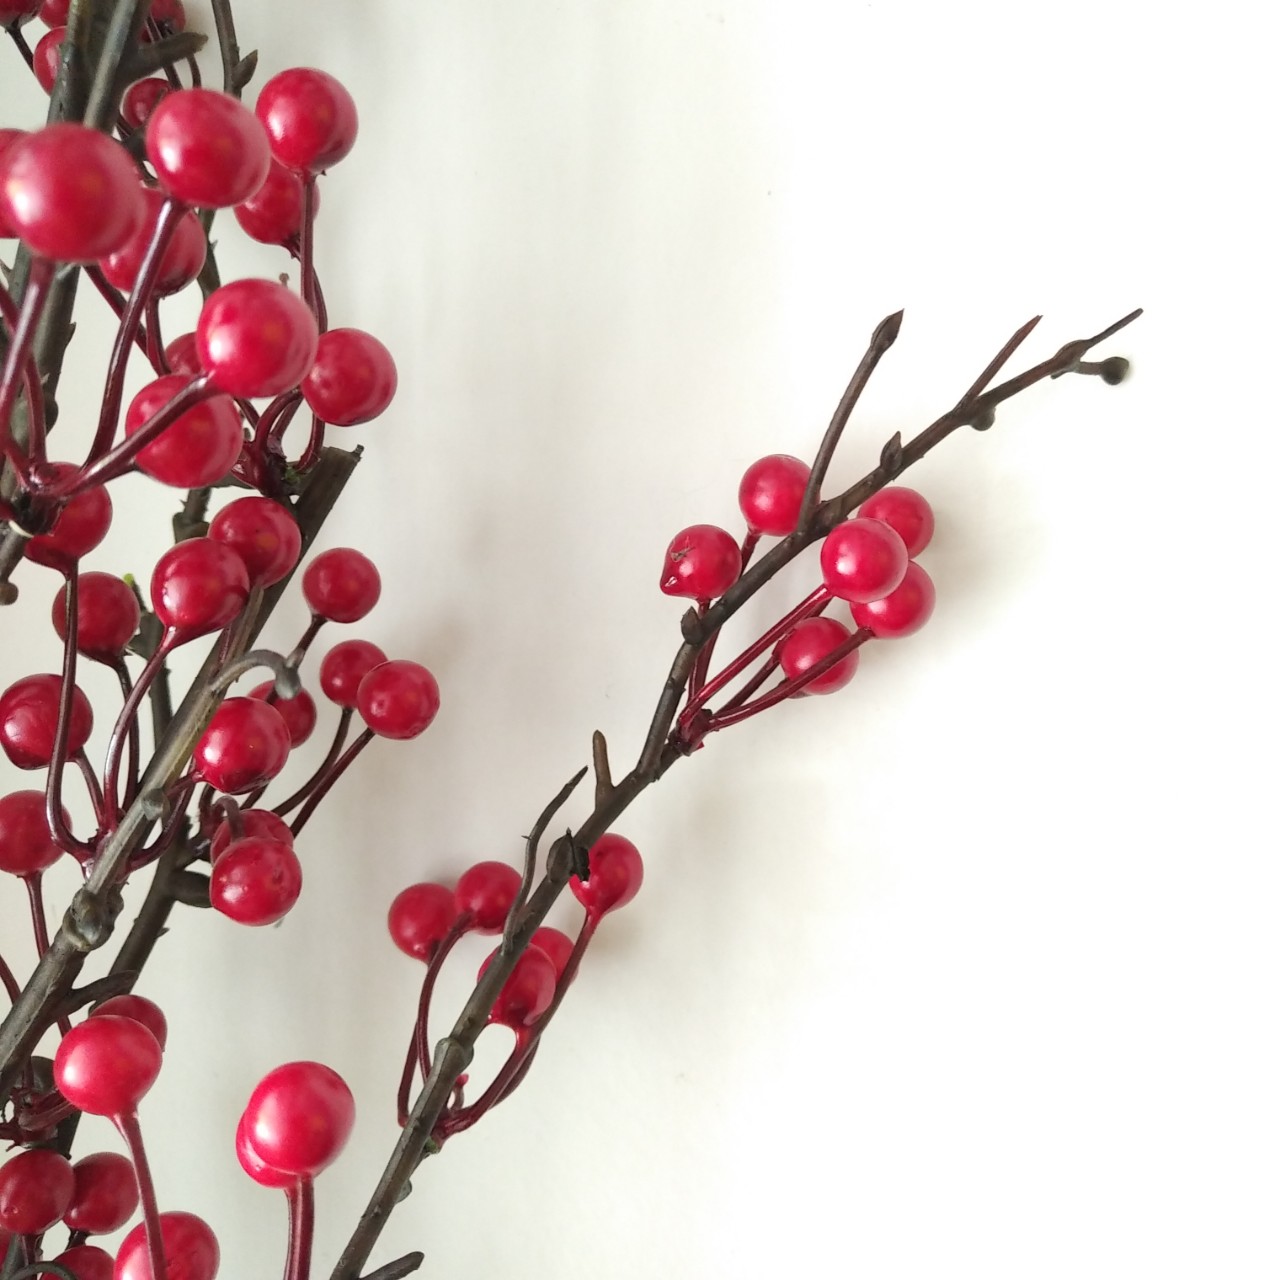 1 Cành trái Berries màu đỏ cao 90cm - Hoa lụa trang trí nhà cửa